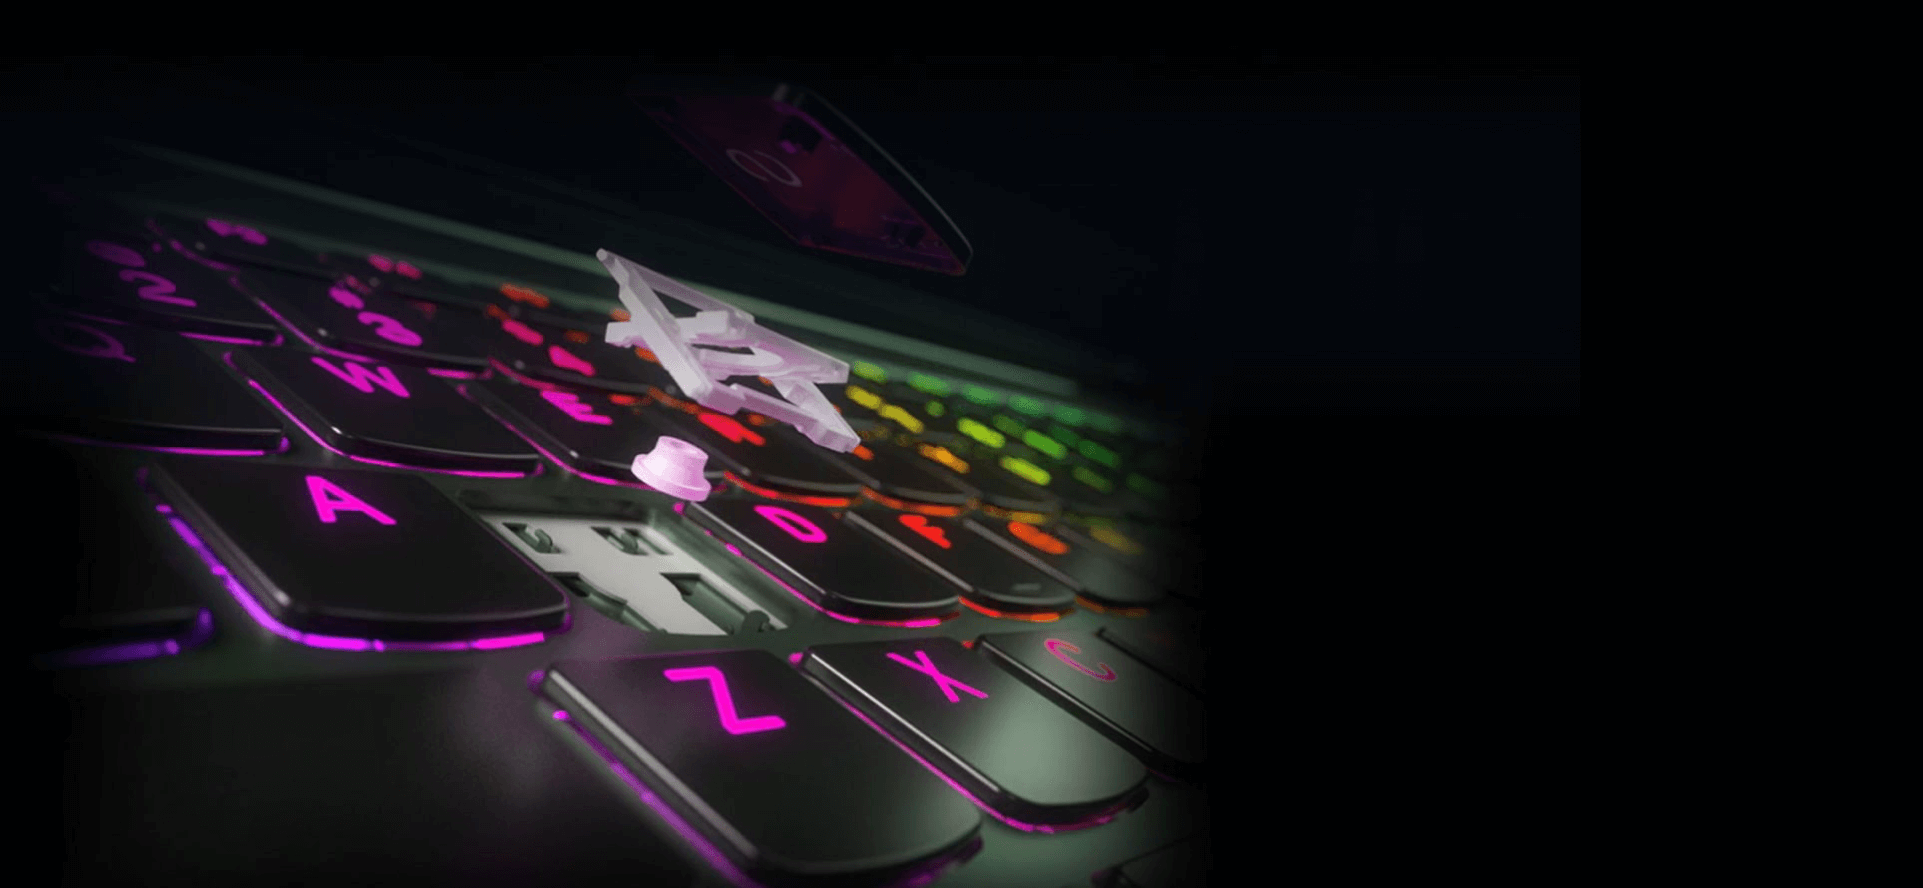 Pohľad zblízka zhora na klávesnici Lenovo a tlačidlo s farebným podsvietením.